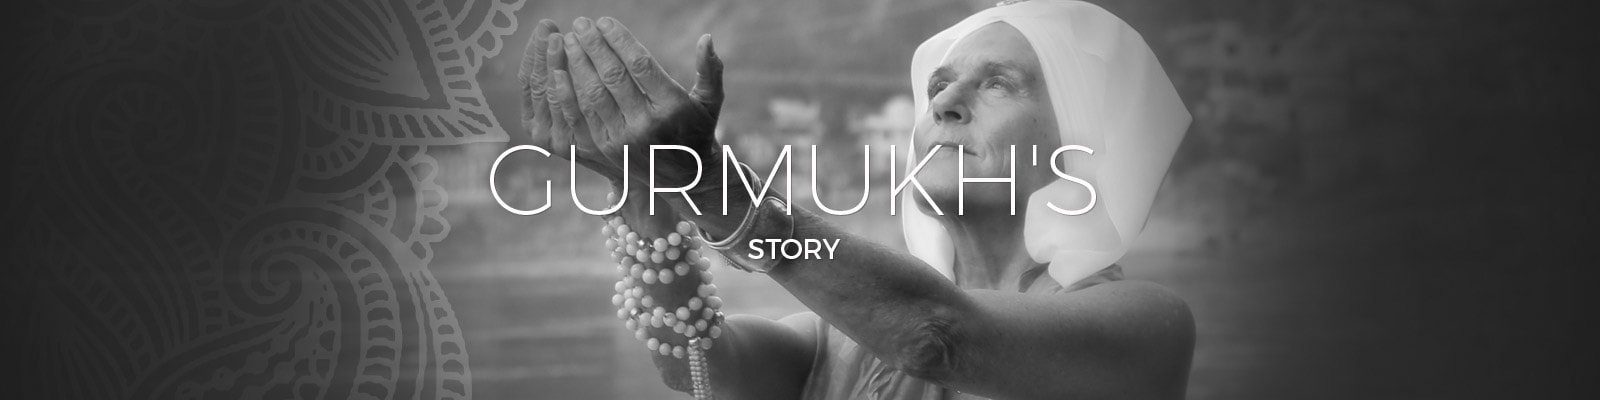 Gurmukh's Story